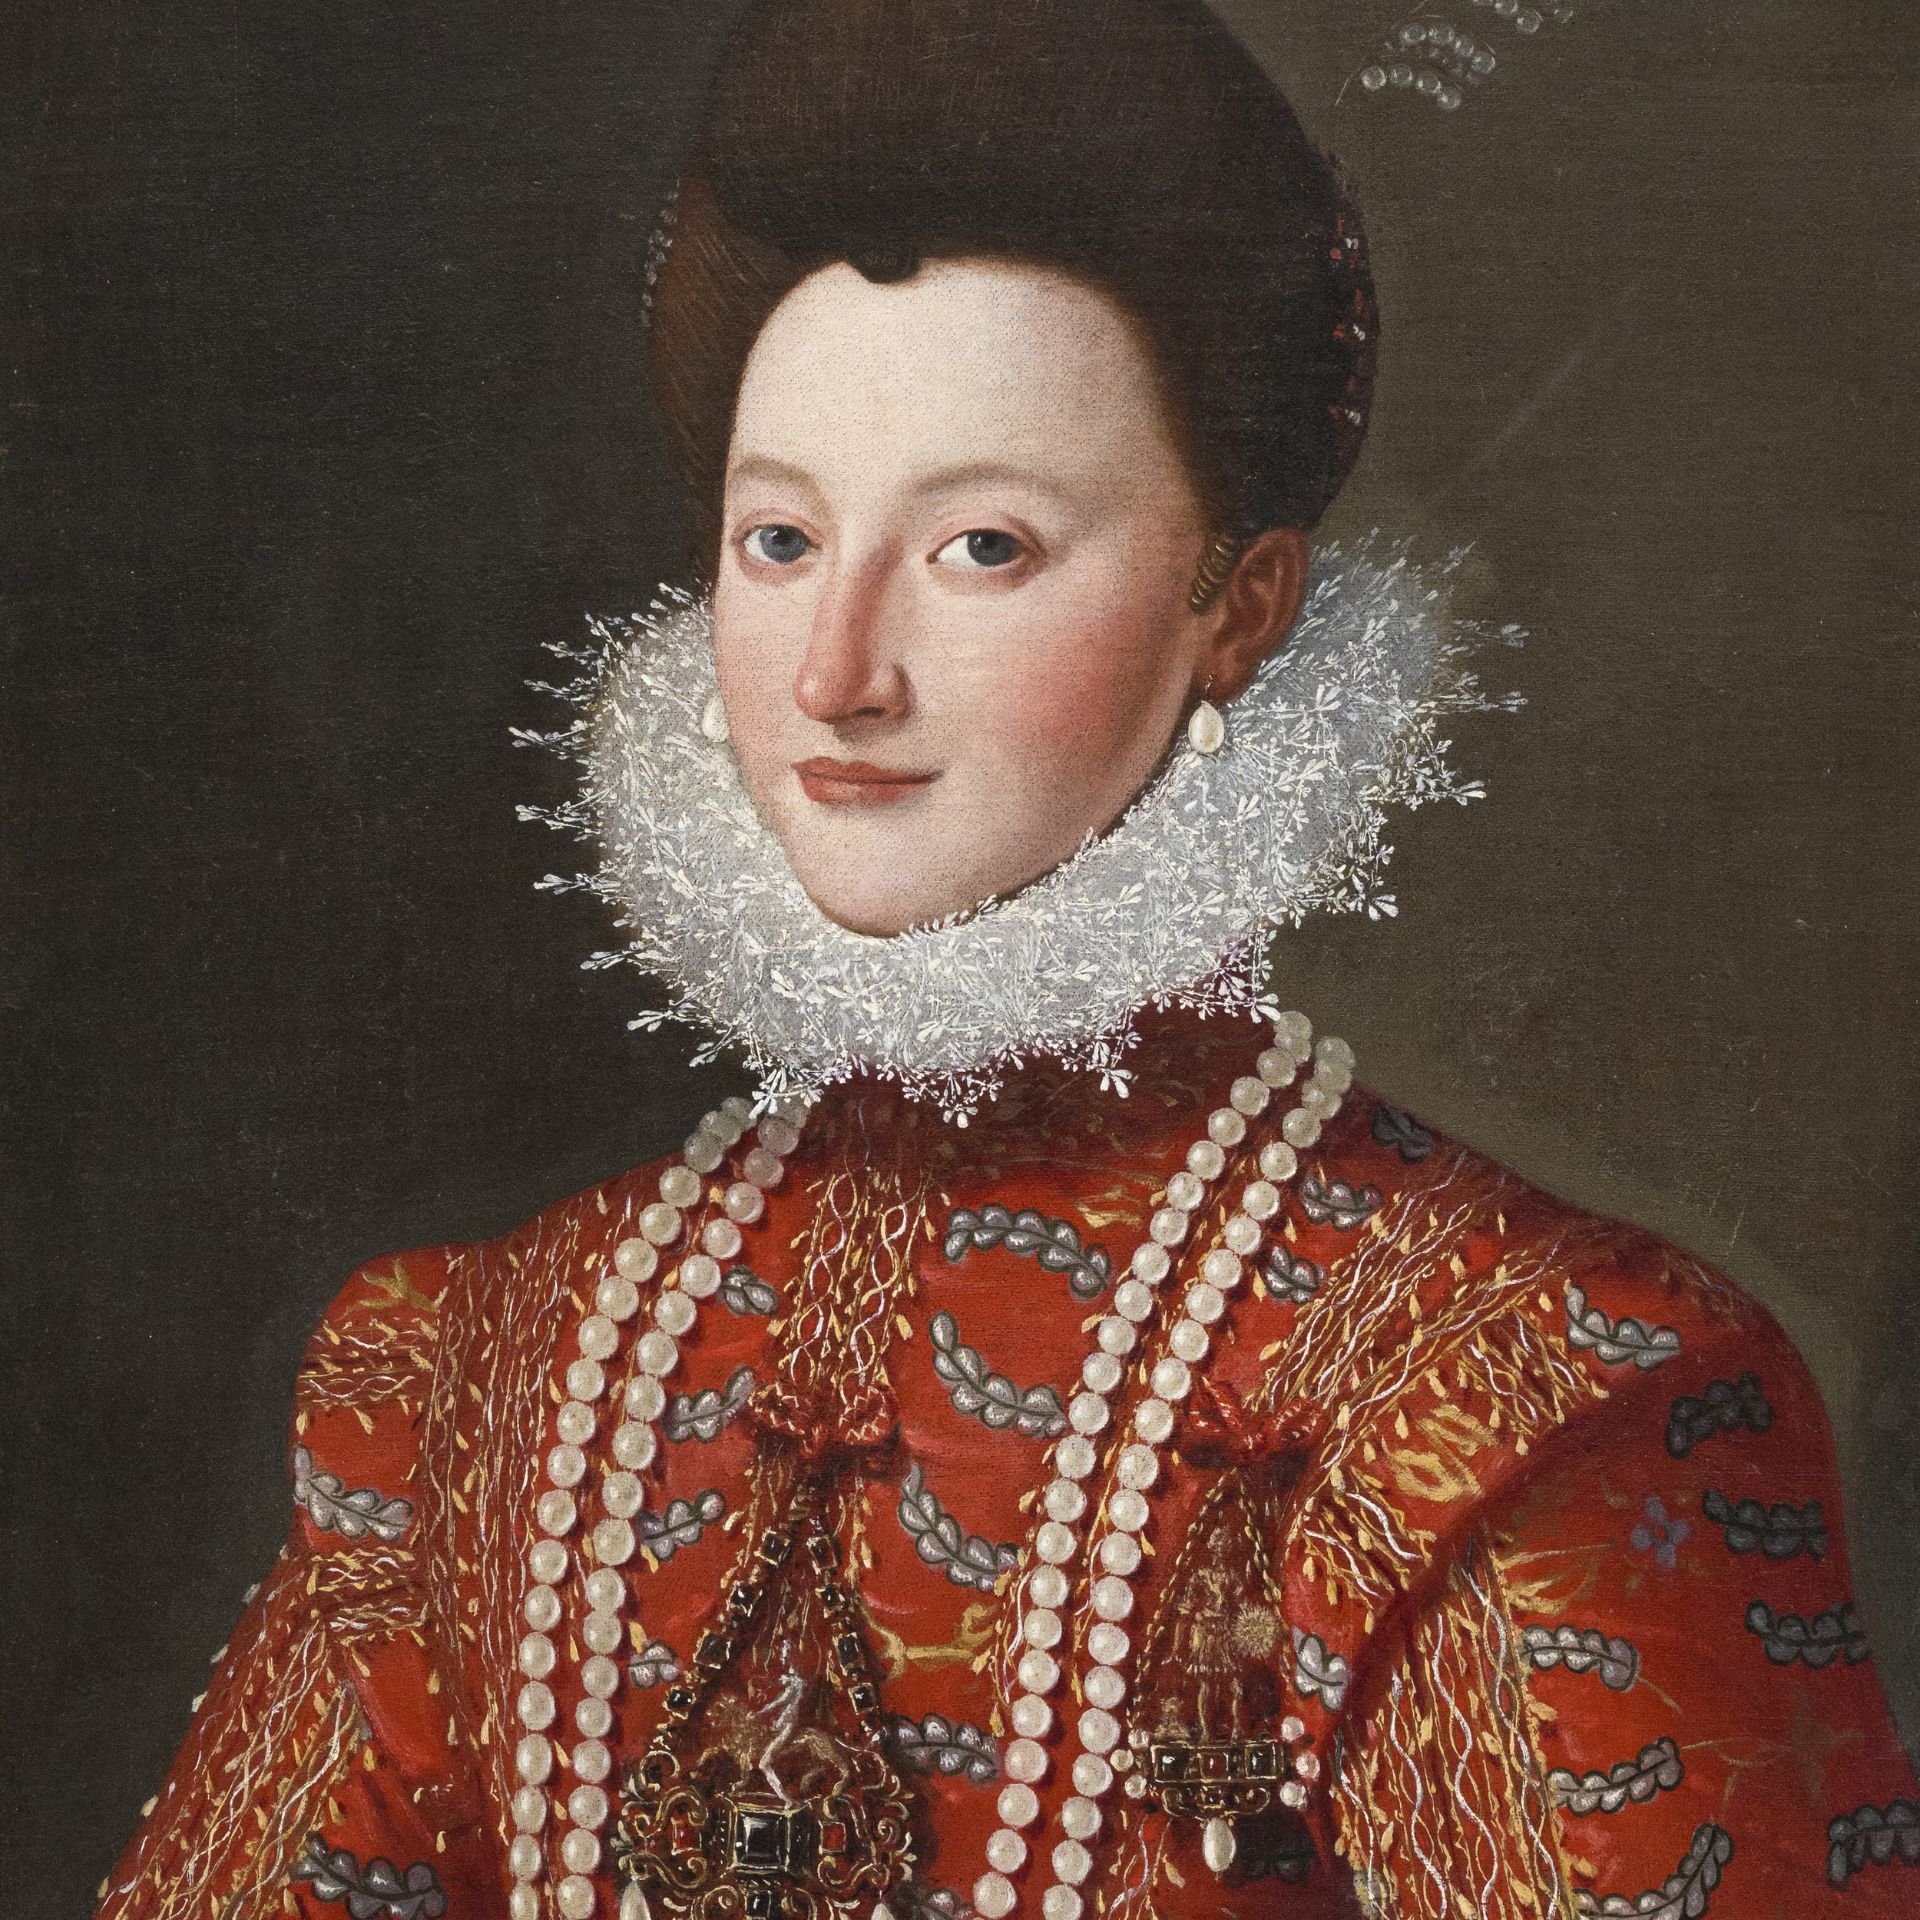 Franz Pourbus II (Anversa 1569 - Parigi 1622) attribuito - Bild 2 aus 3